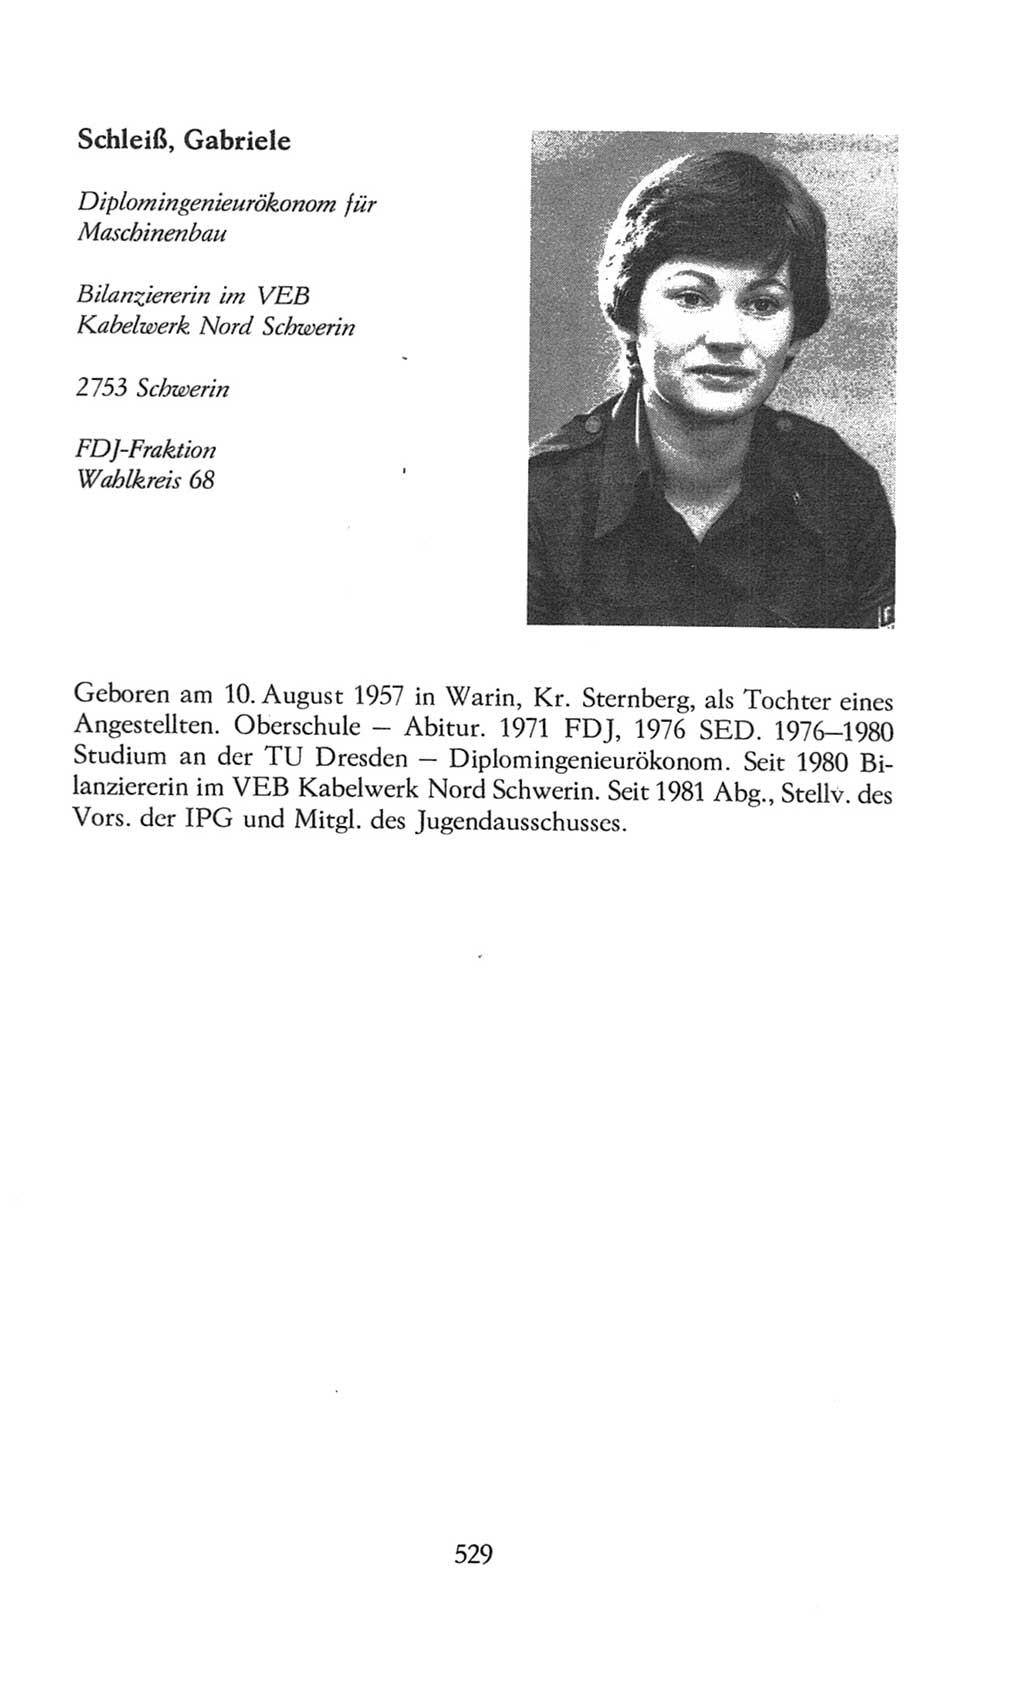 Volkskammer (VK) der Deutschen Demokratischen Republik (DDR), 8. Wahlperiode 1981-1986, Seite 529 (VK. DDR 8. WP. 1981-1986, S. 529)